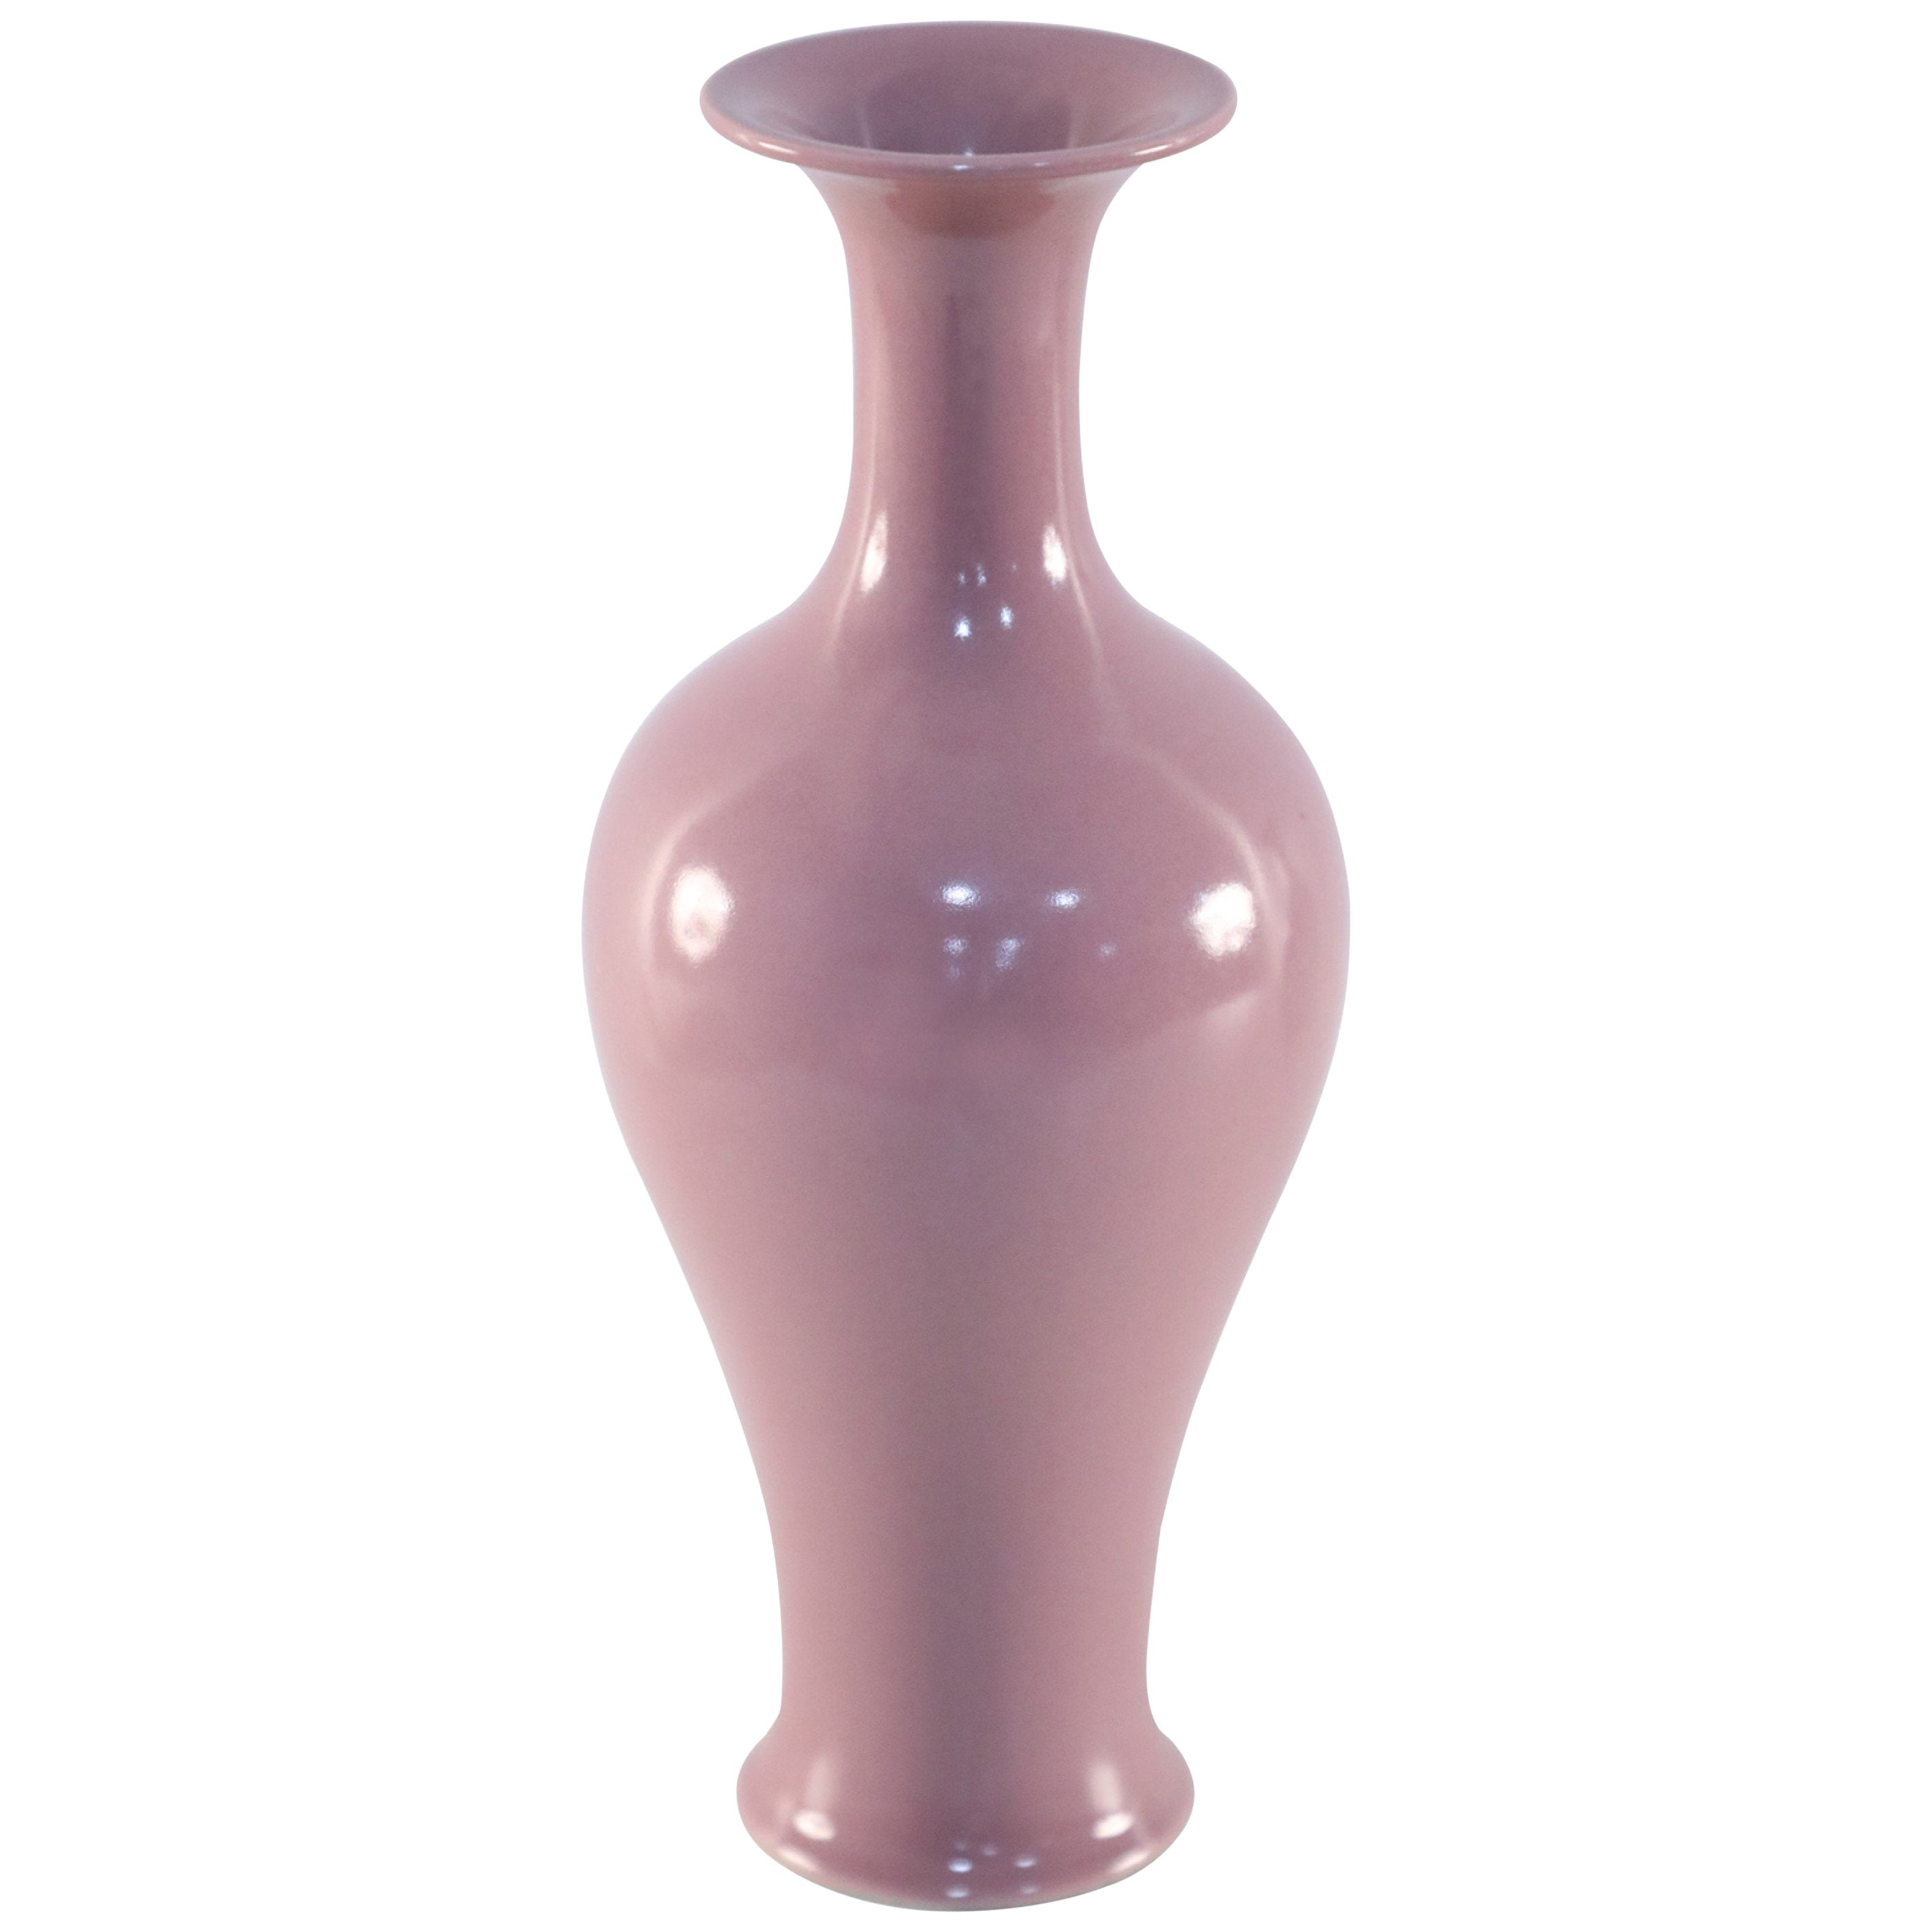 Chinese Mauve Glazed Porcelain Vase